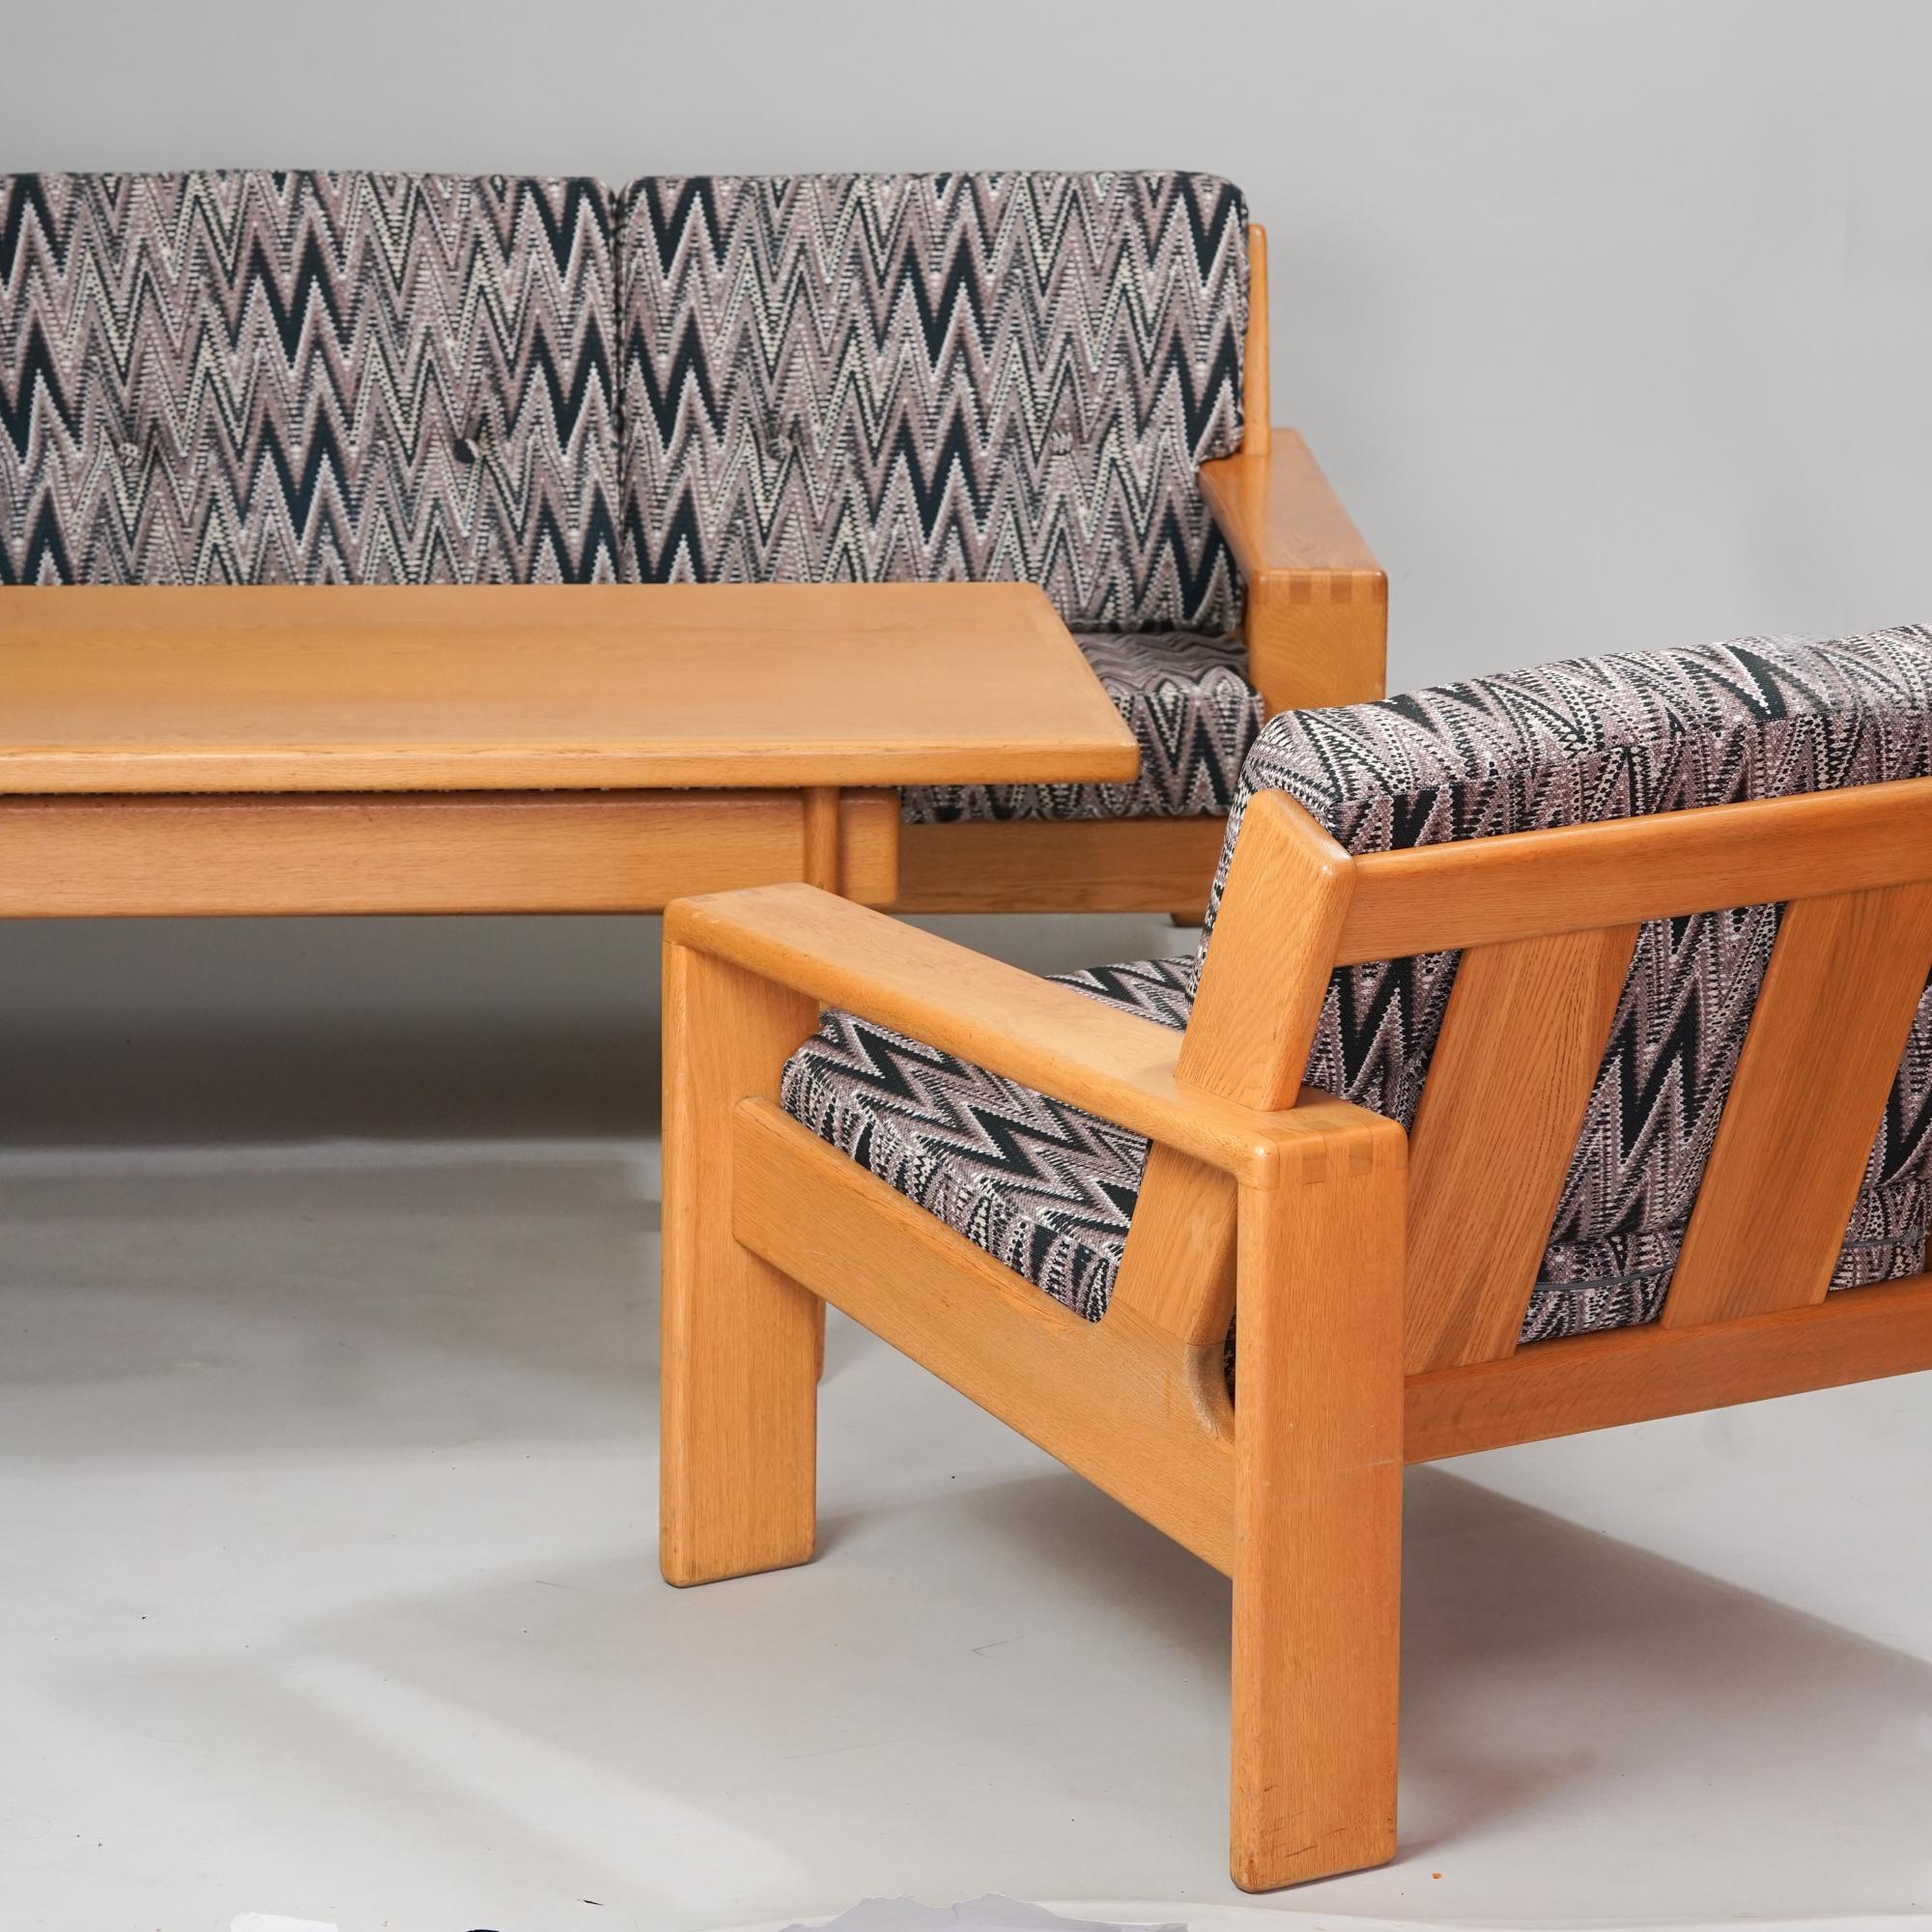 Ikonisches Bonanza-Sofa, entworfen von Esko Pajamies, hergestellt von Asko, Mitte des 20. Jahrhunderts. Rahmen aus Eichenholz. Neu gepolsterte Sitze mit Ludvig Svensson-Stoff. Der Rahmen ist neu lackiert. Guter Vintage-Zustand, leichte Patina im